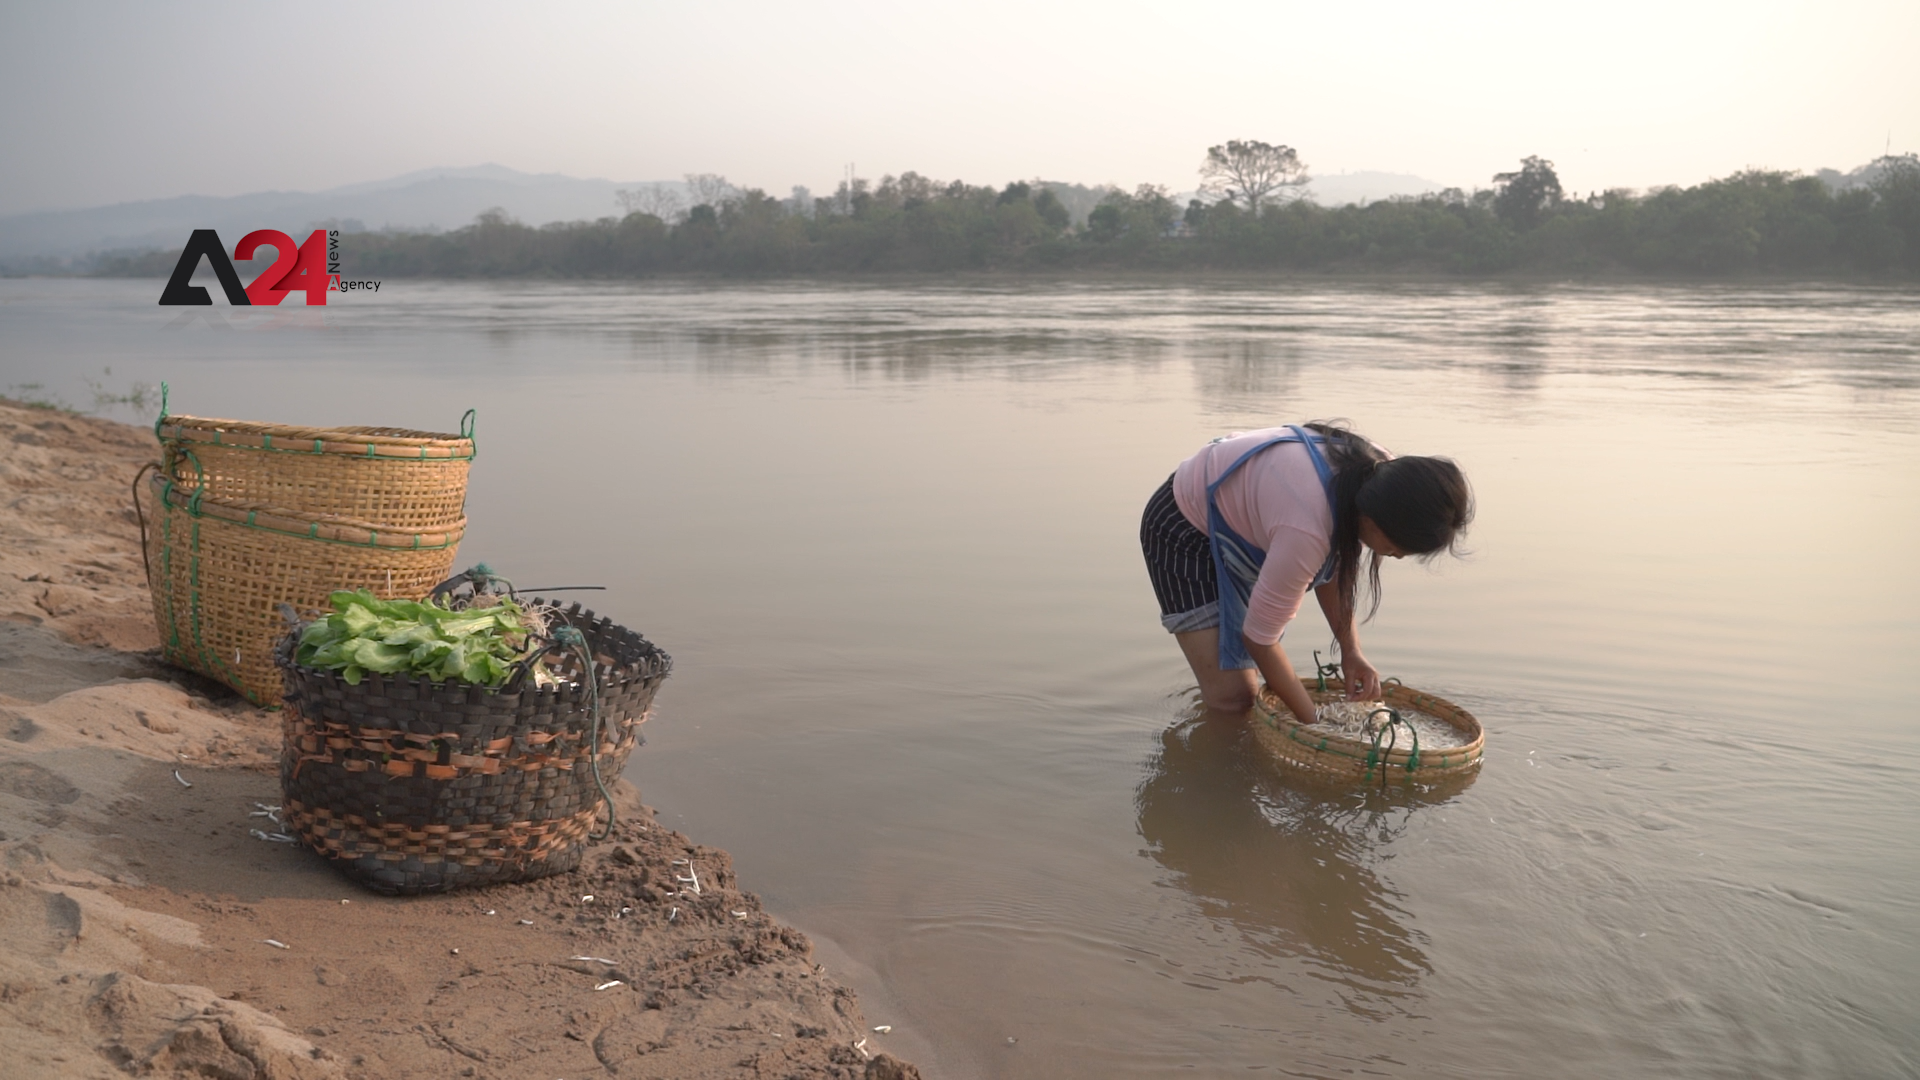 Thailand – Chiang Rai dams take toll on wildlife, farmers